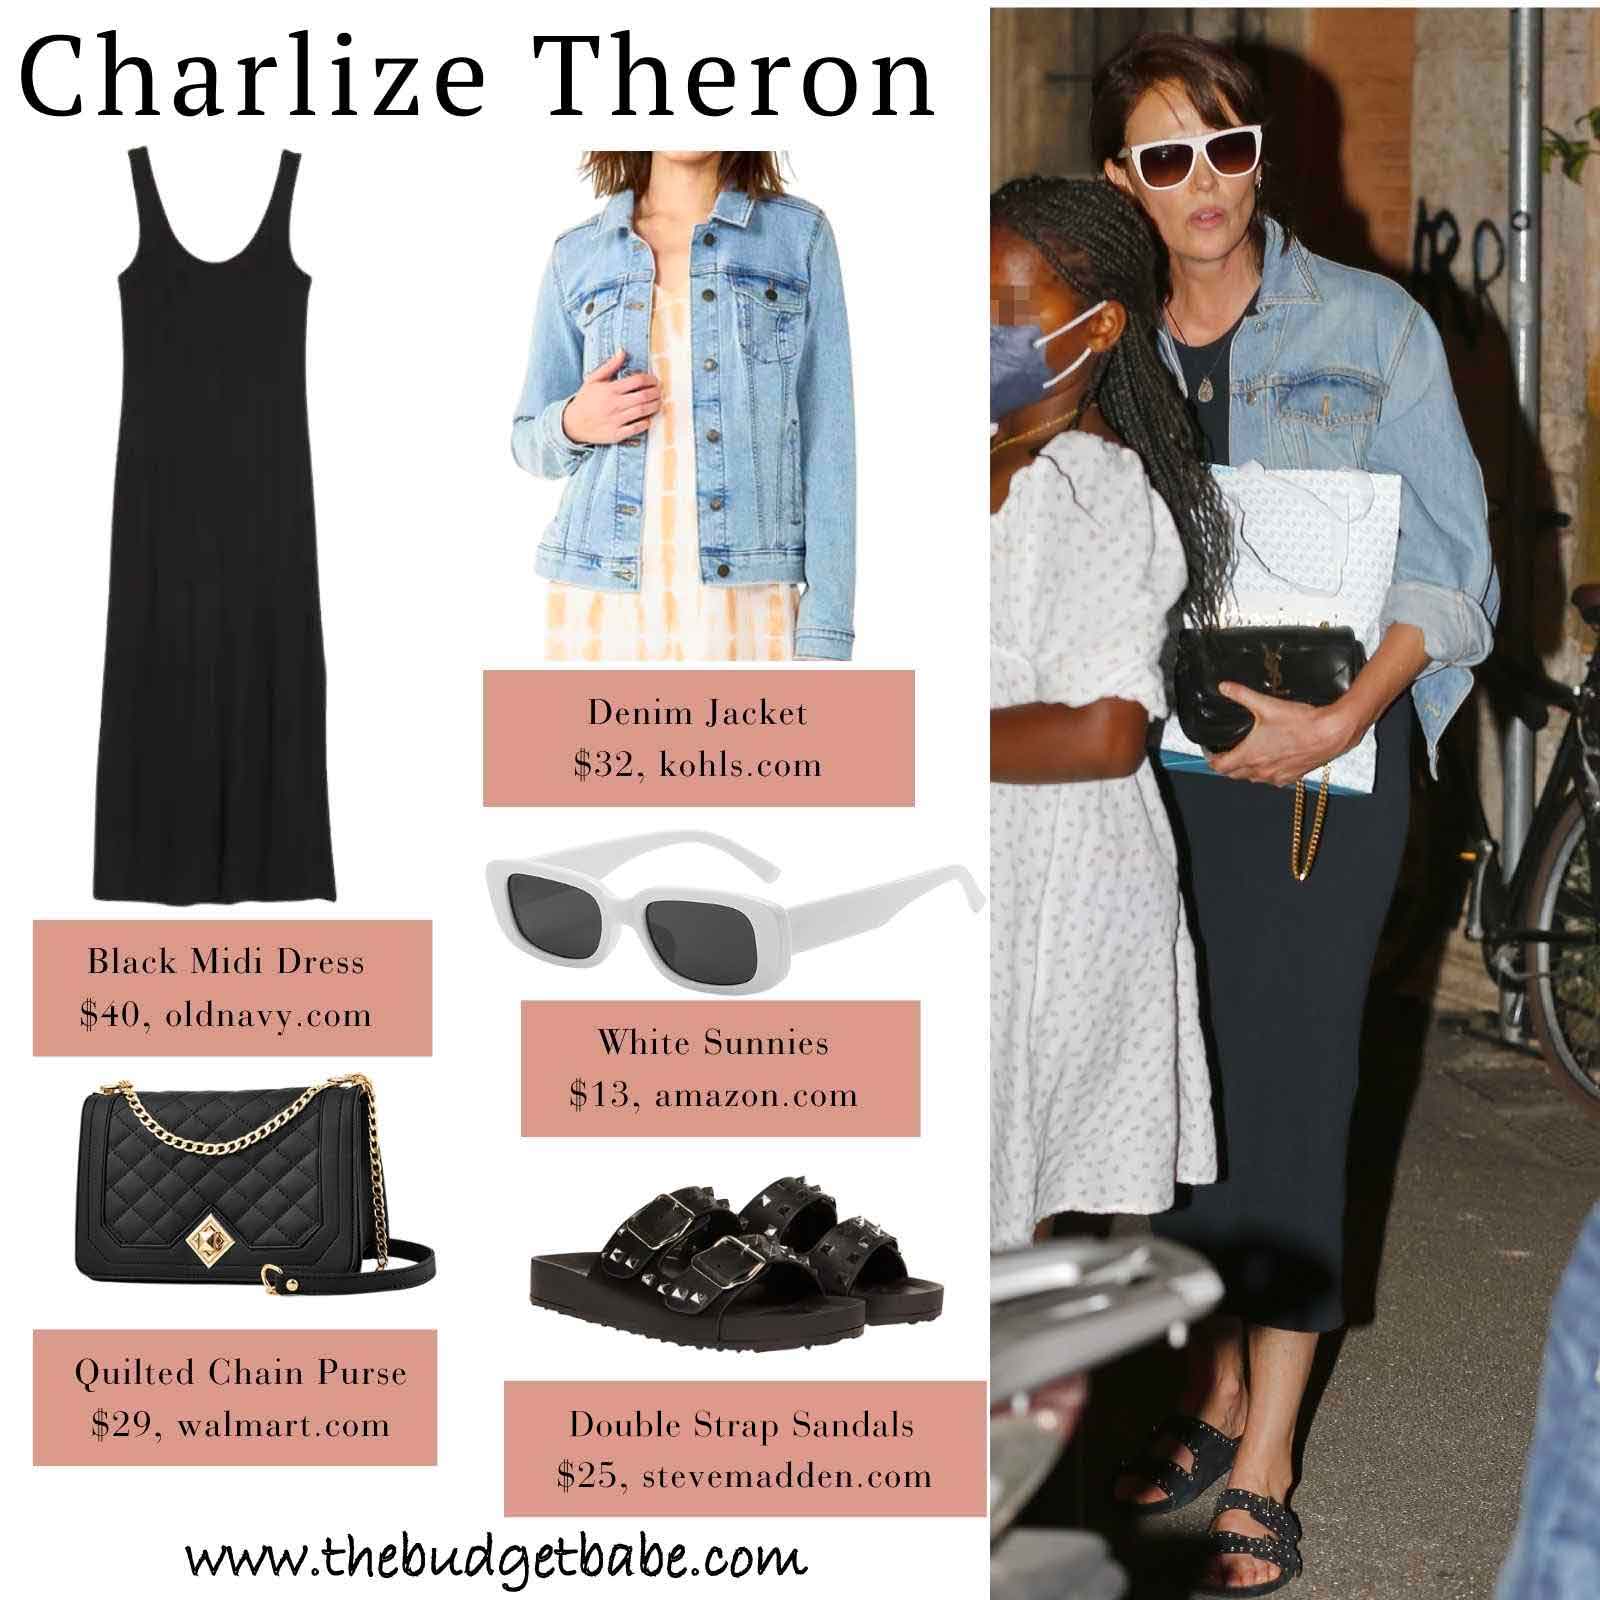 Czarna sukienka maxi Charlize Theron i wygląd dżinsowej kurtki